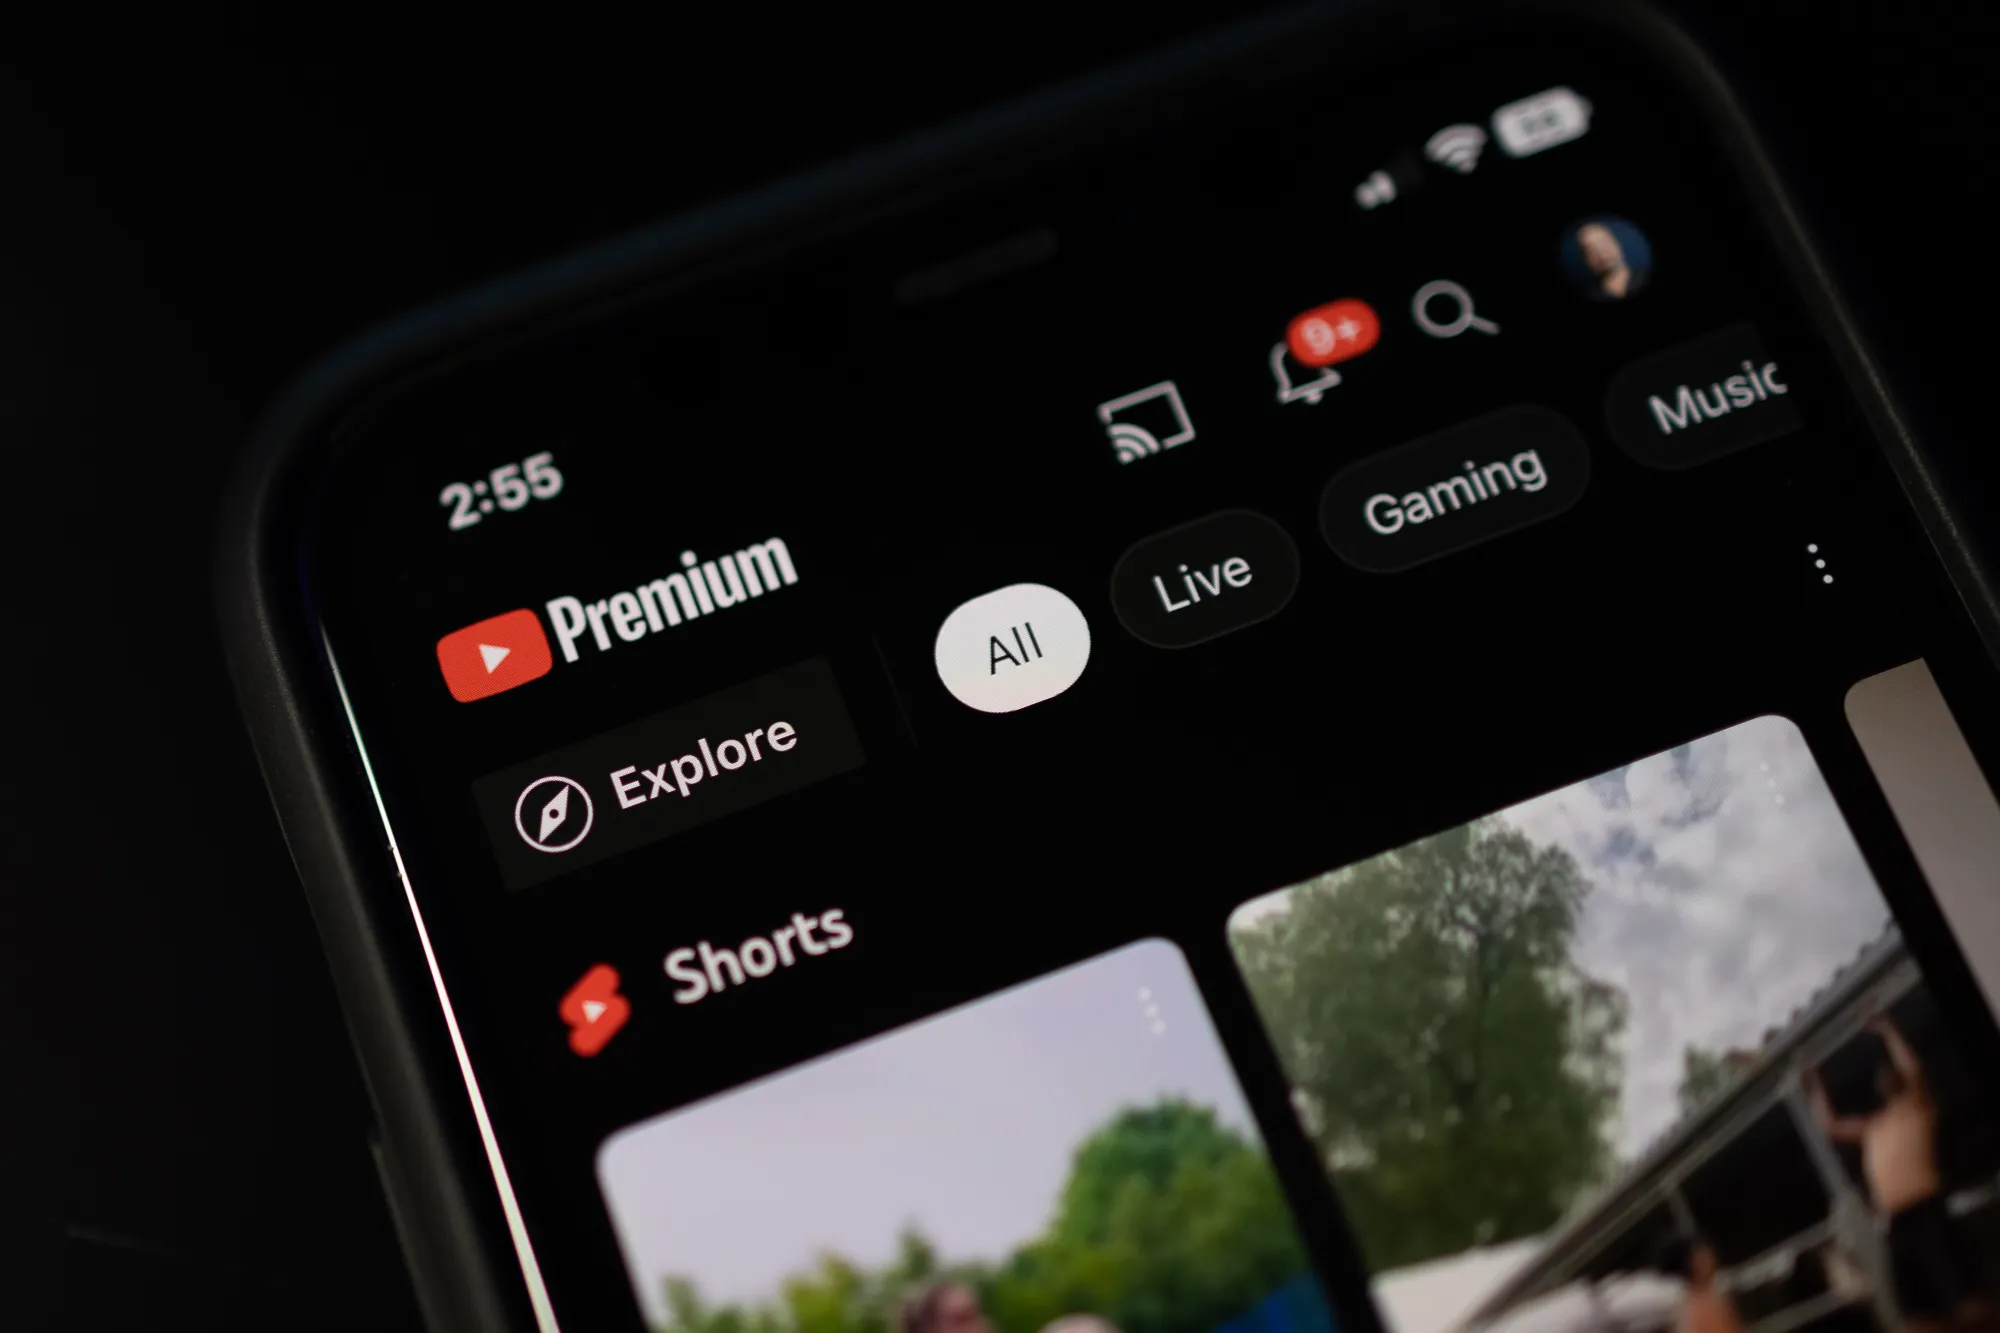 YouTube Premium on iPhone